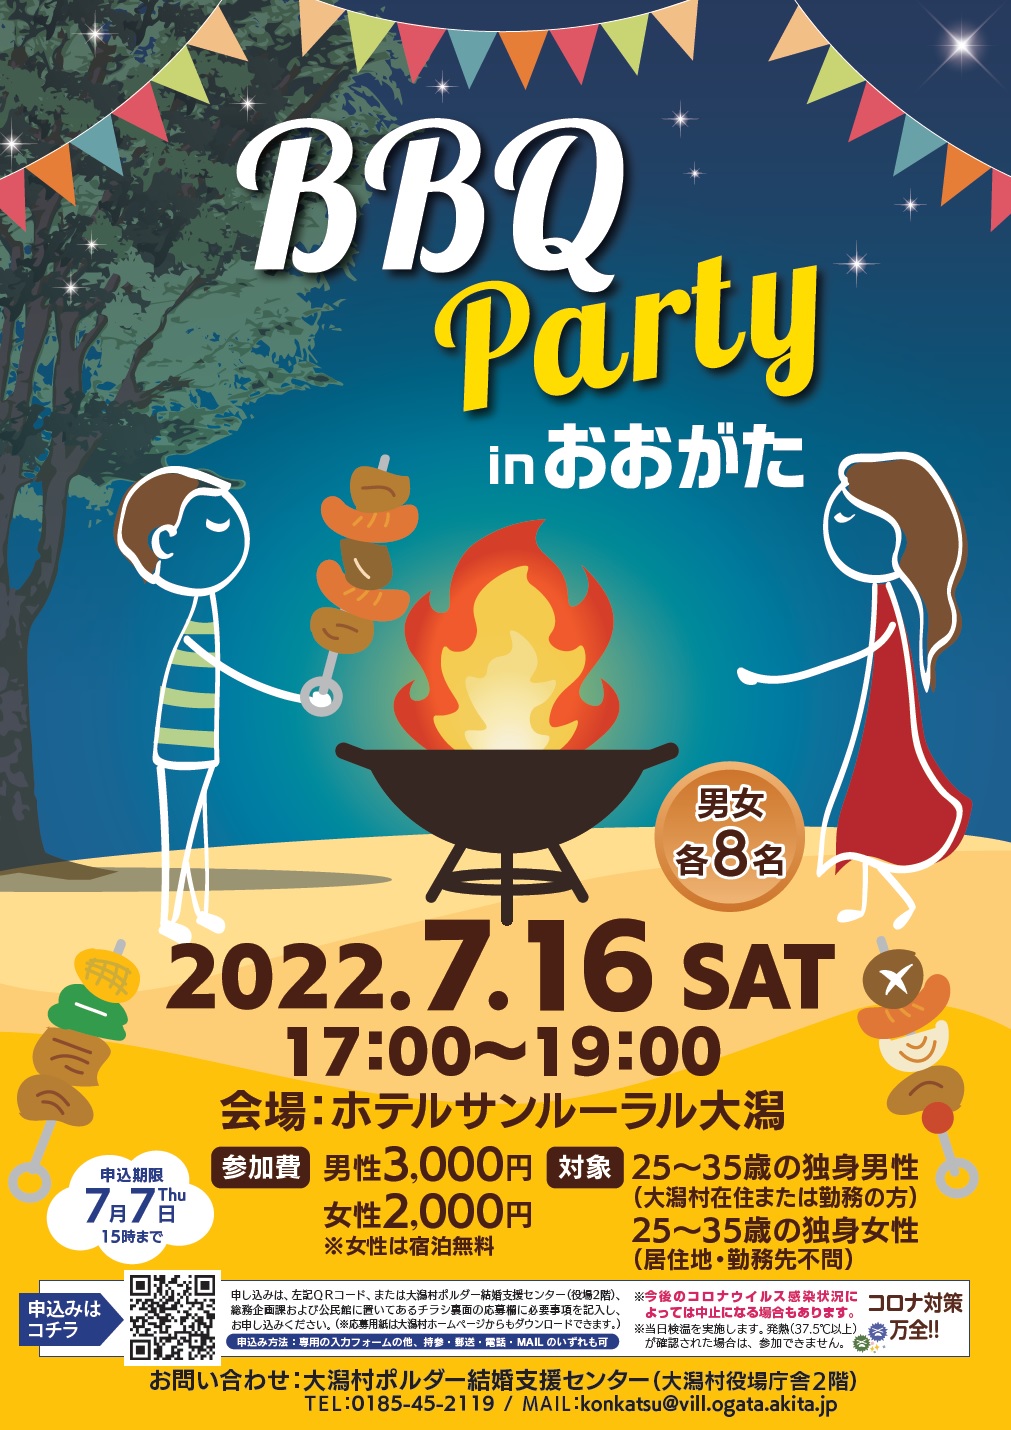 BBQ Party inおおがた【大潟村】